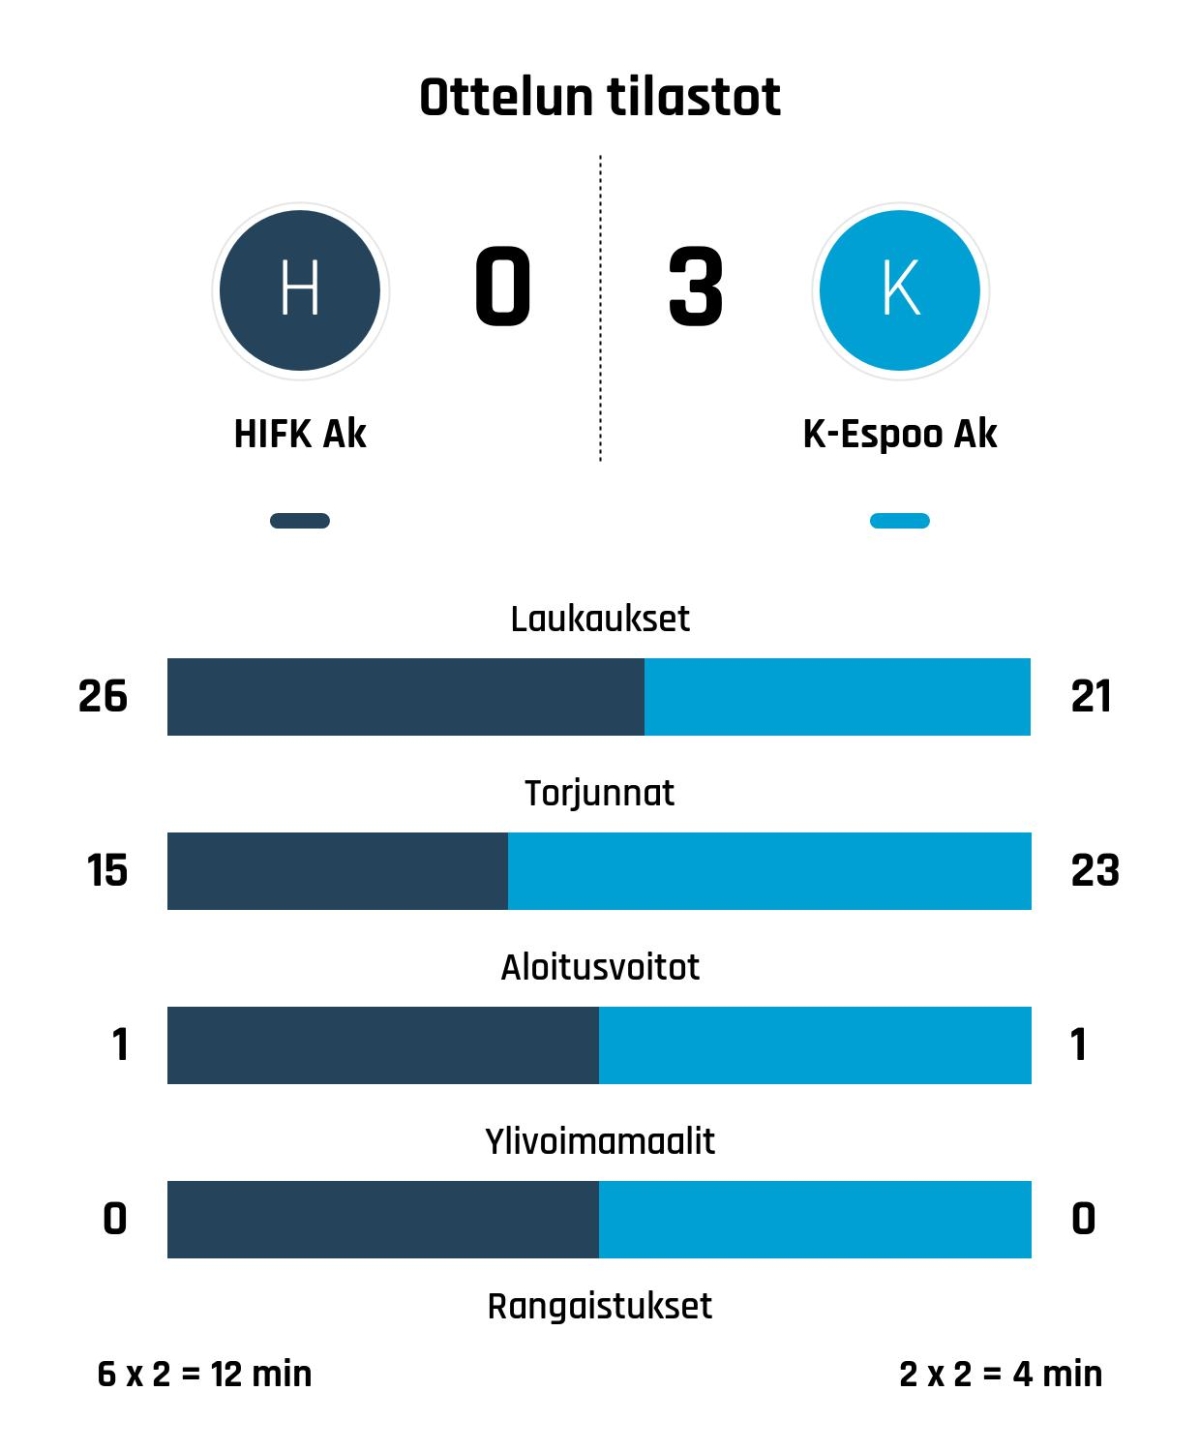 K-Espoo Ak voitti vieraissa, HIFK Ak jäi maaleitta